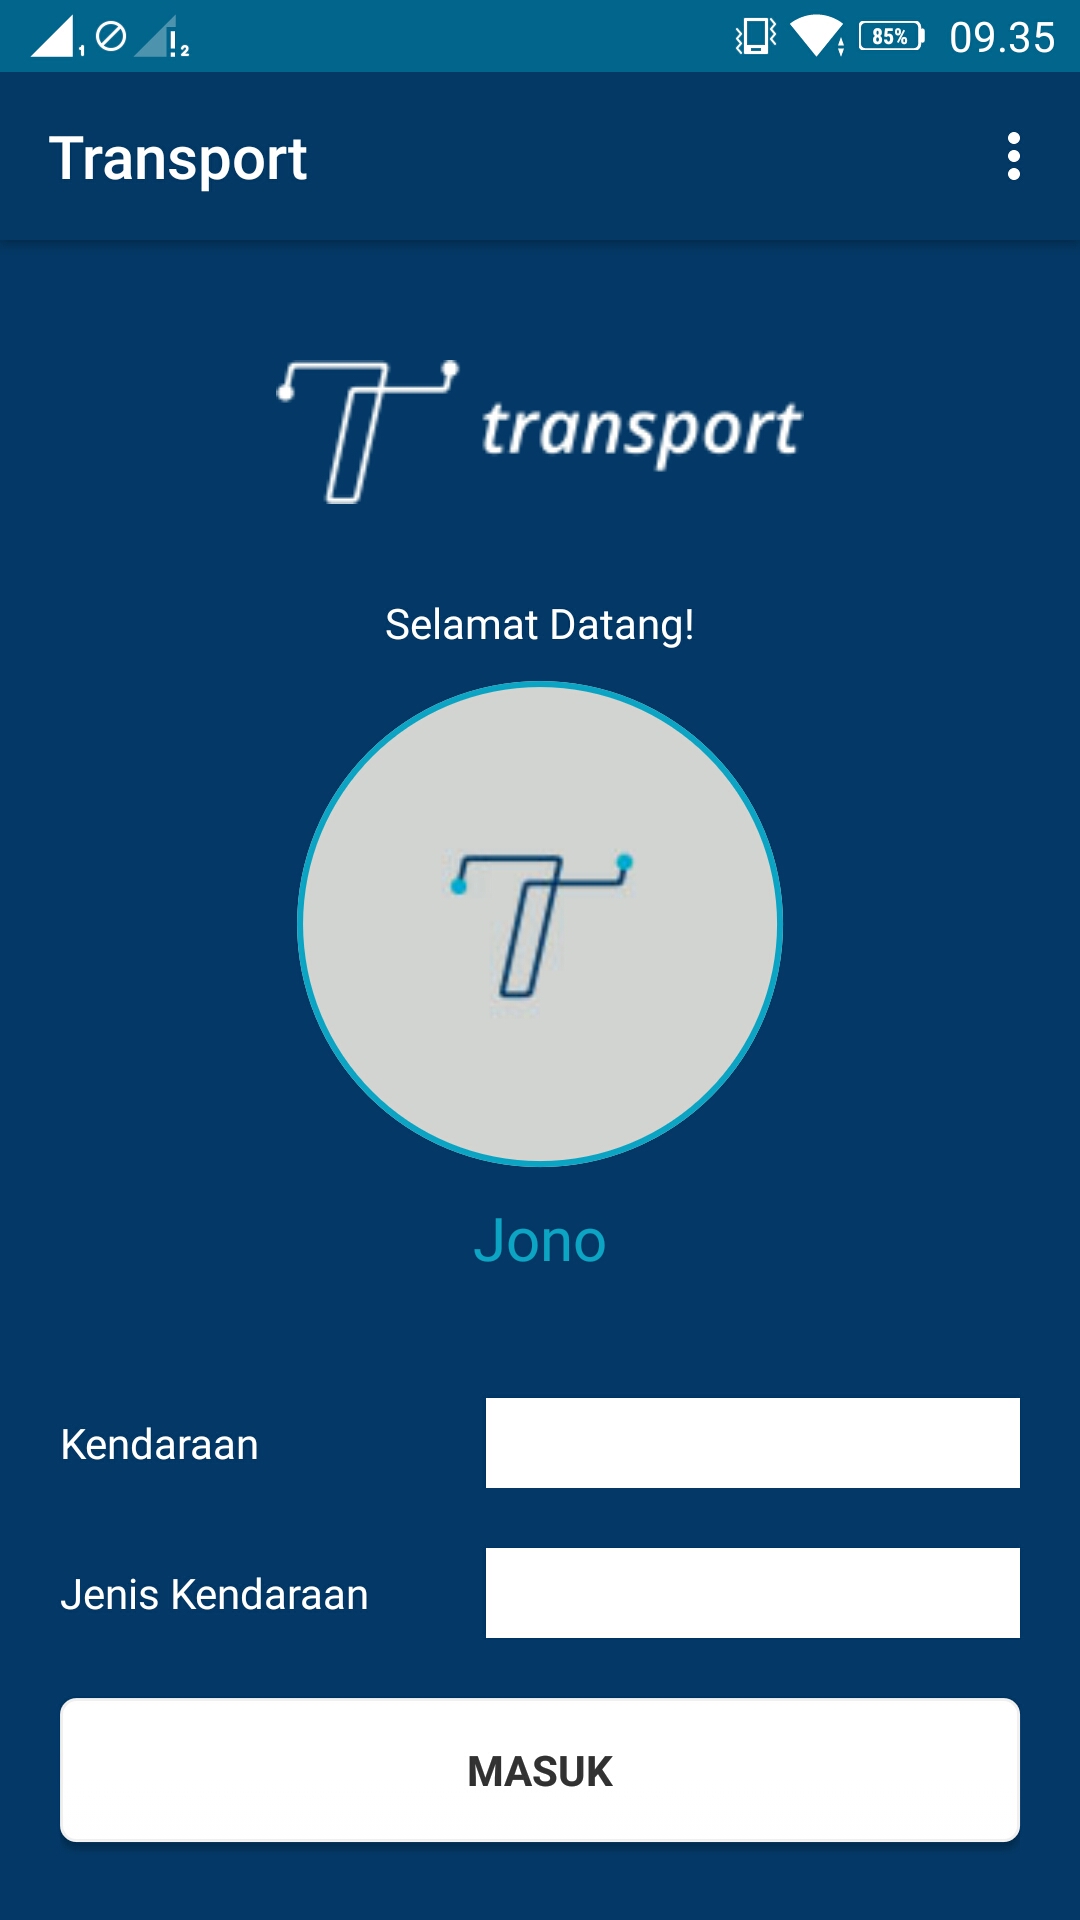 Transport Application